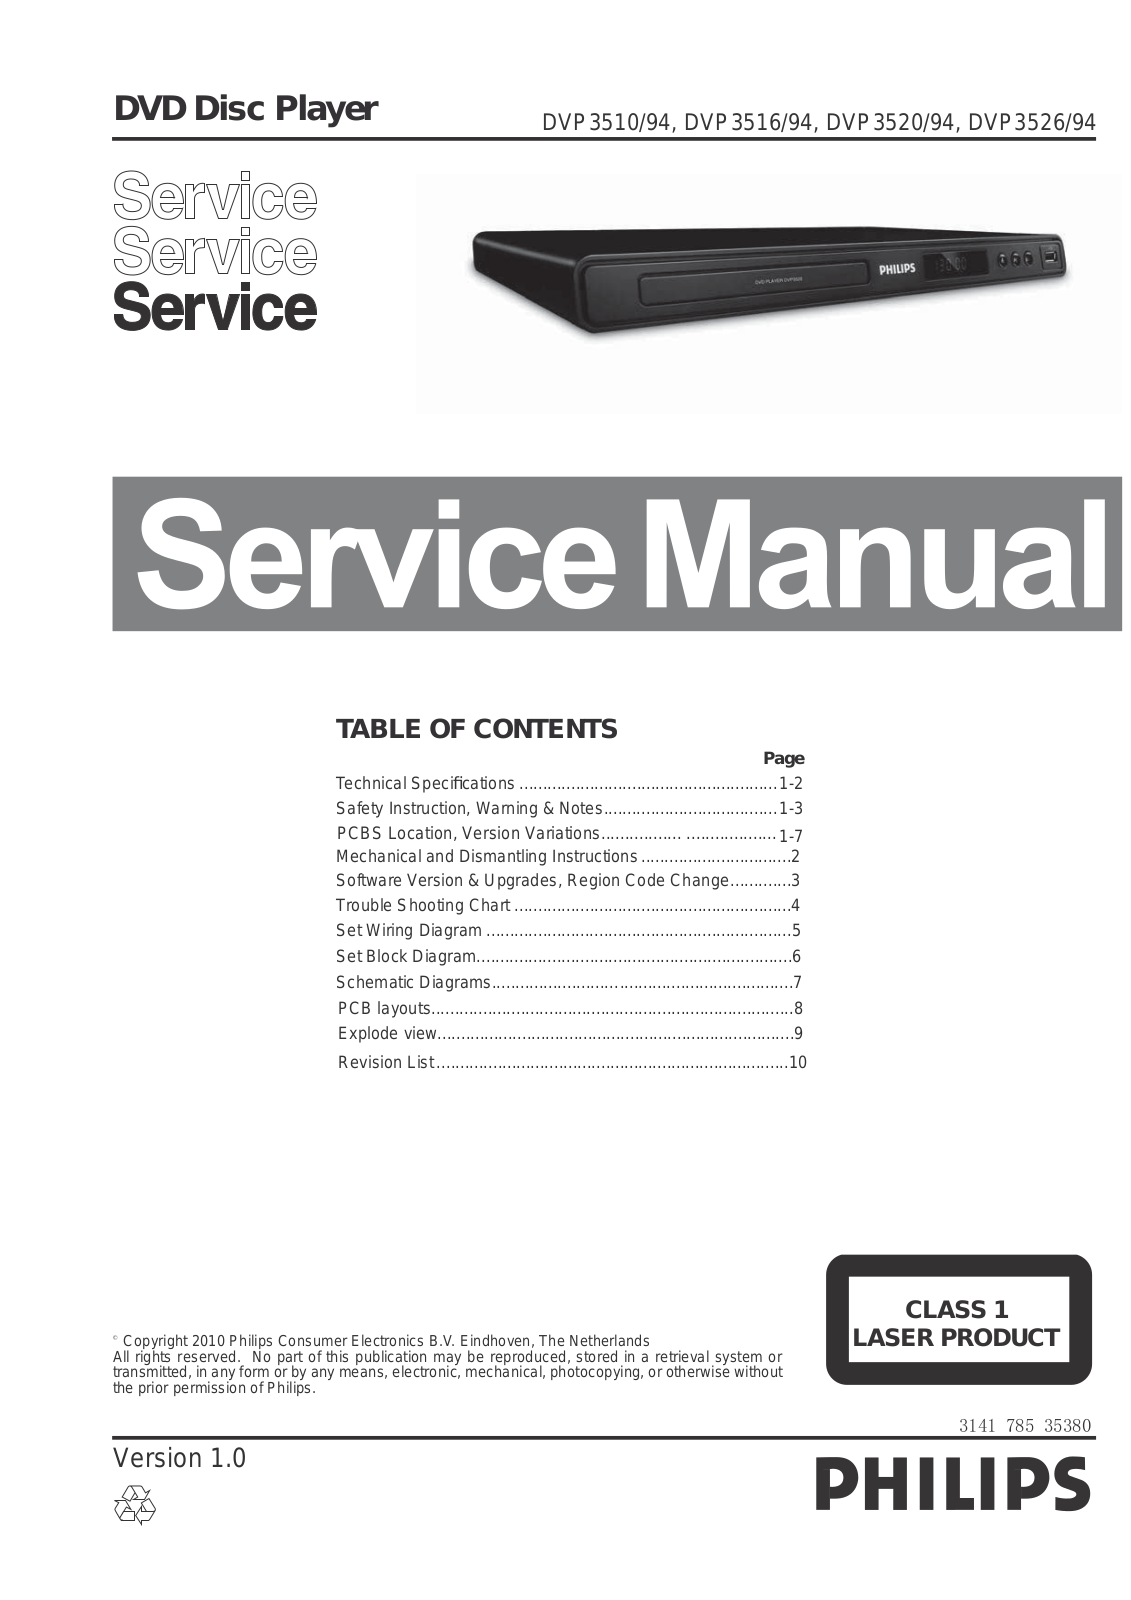 Philips DVP-3526, DVP-3520, DVP-3516, DVP-3510 Service Manual